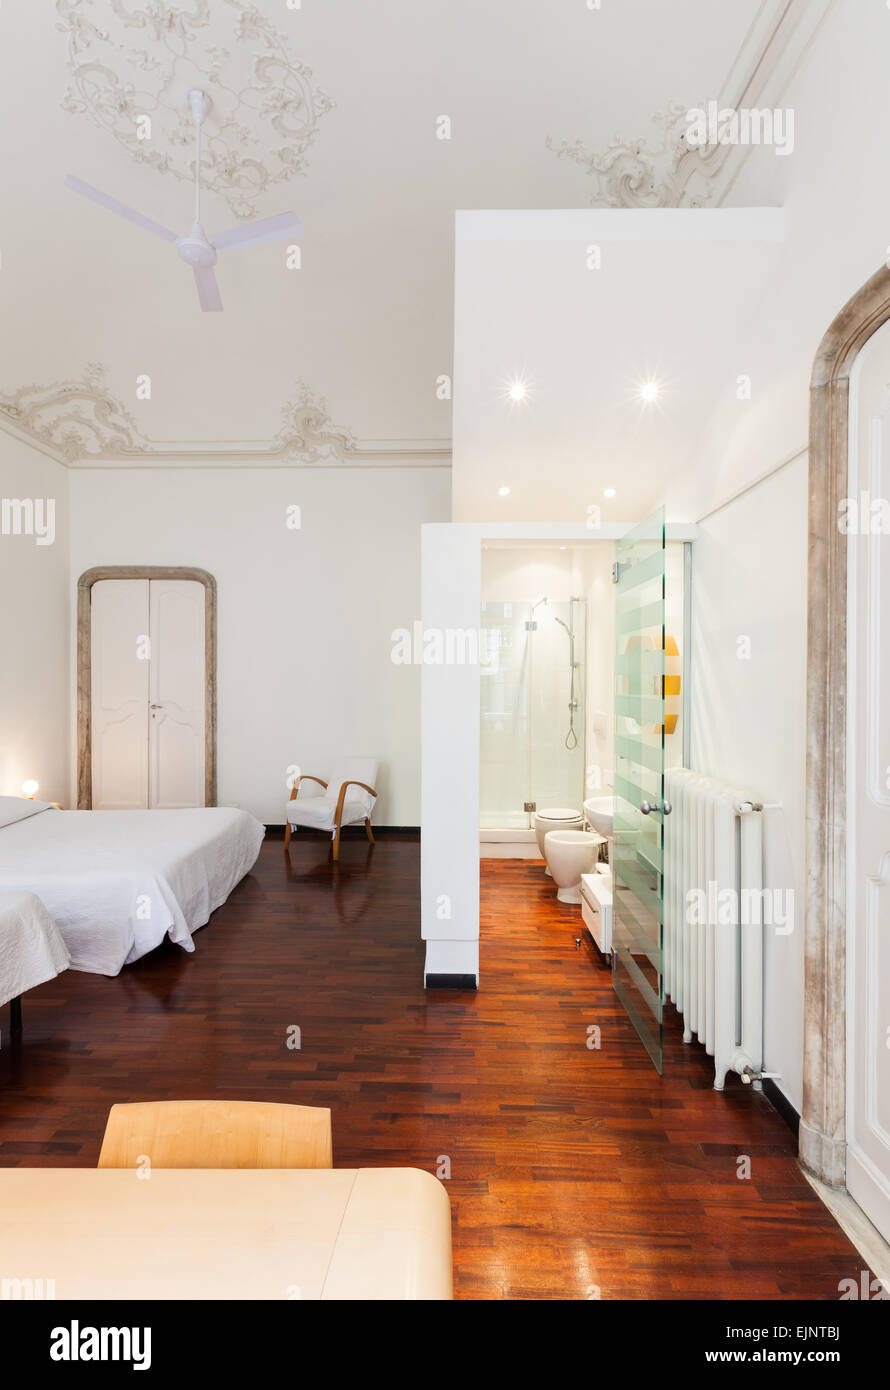 Camera da letto con bagno immagini e fotografie stock ad alta risoluzione -  Alamy